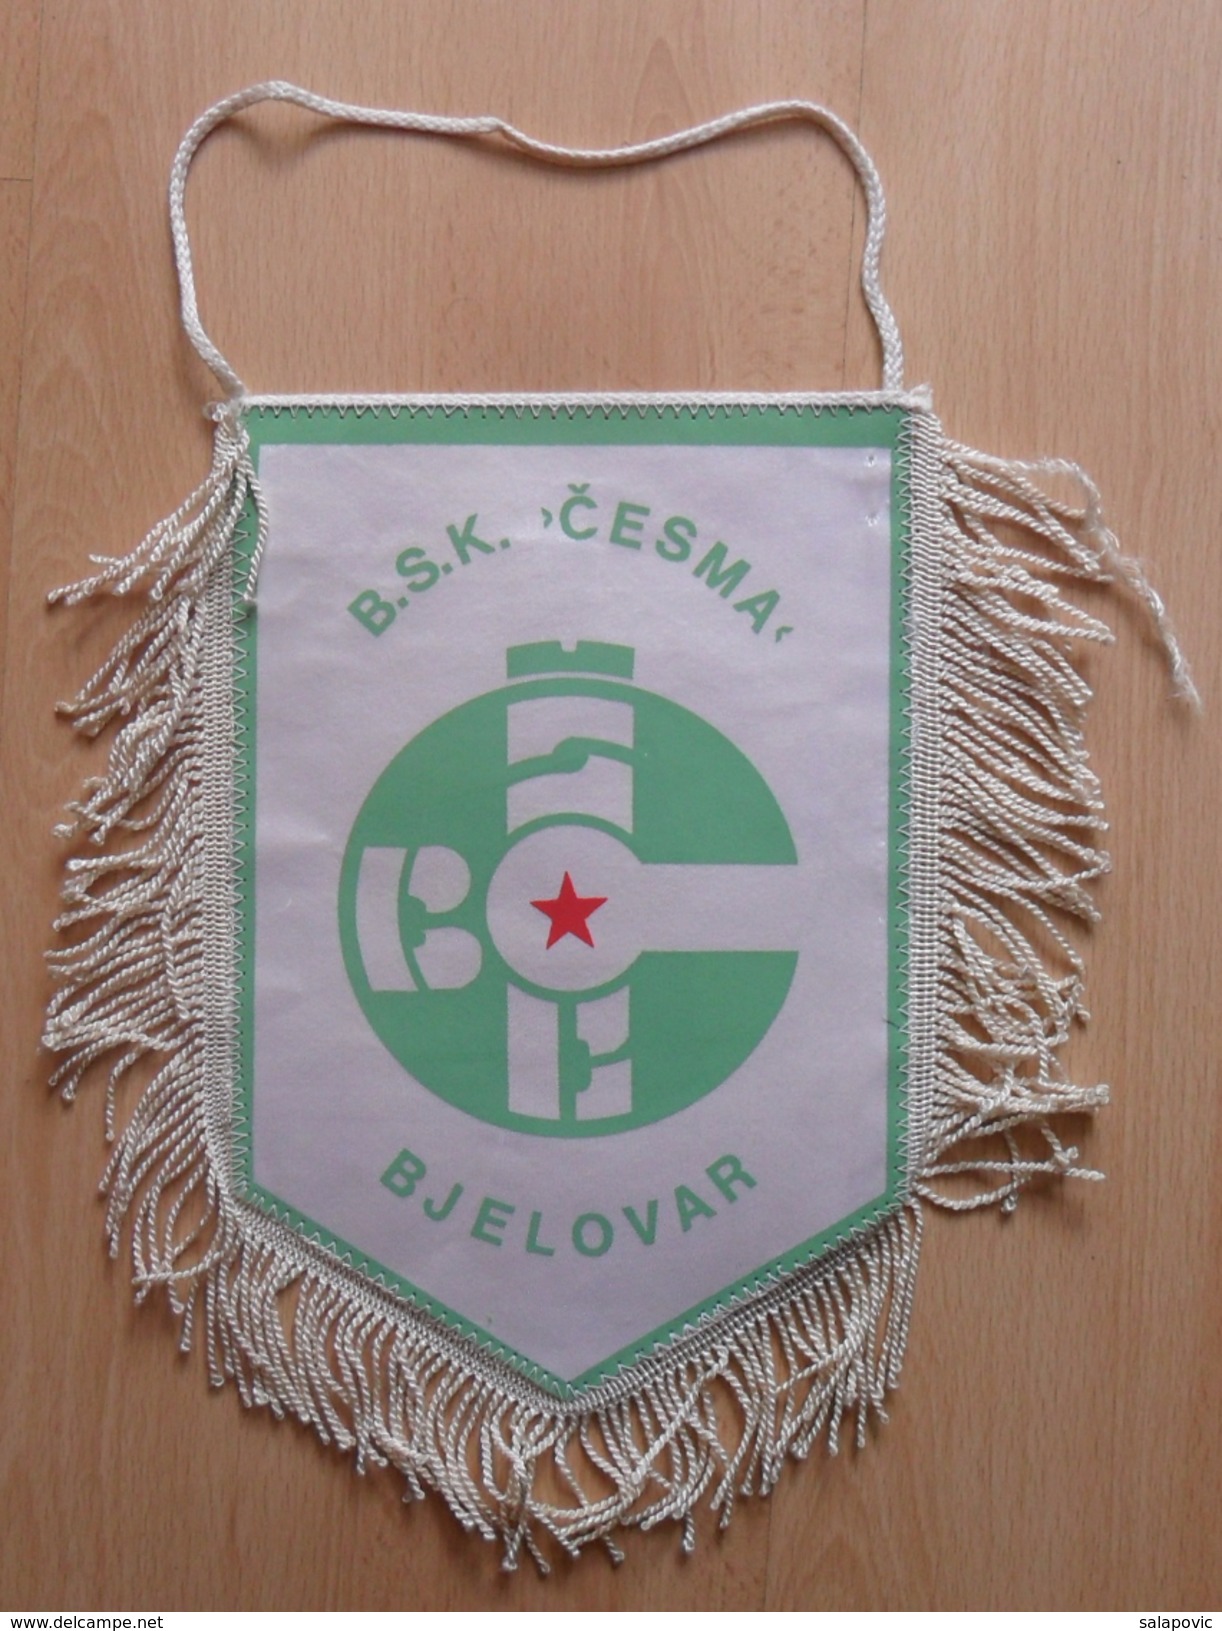 BSK CESMA BJELOVAR Croatia  FOOTBALL CLUB, SOCCER / FUTBOL / CALCIO  OLD PENNANT, SPORTS FLAG - Habillement, Souvenirs & Autres